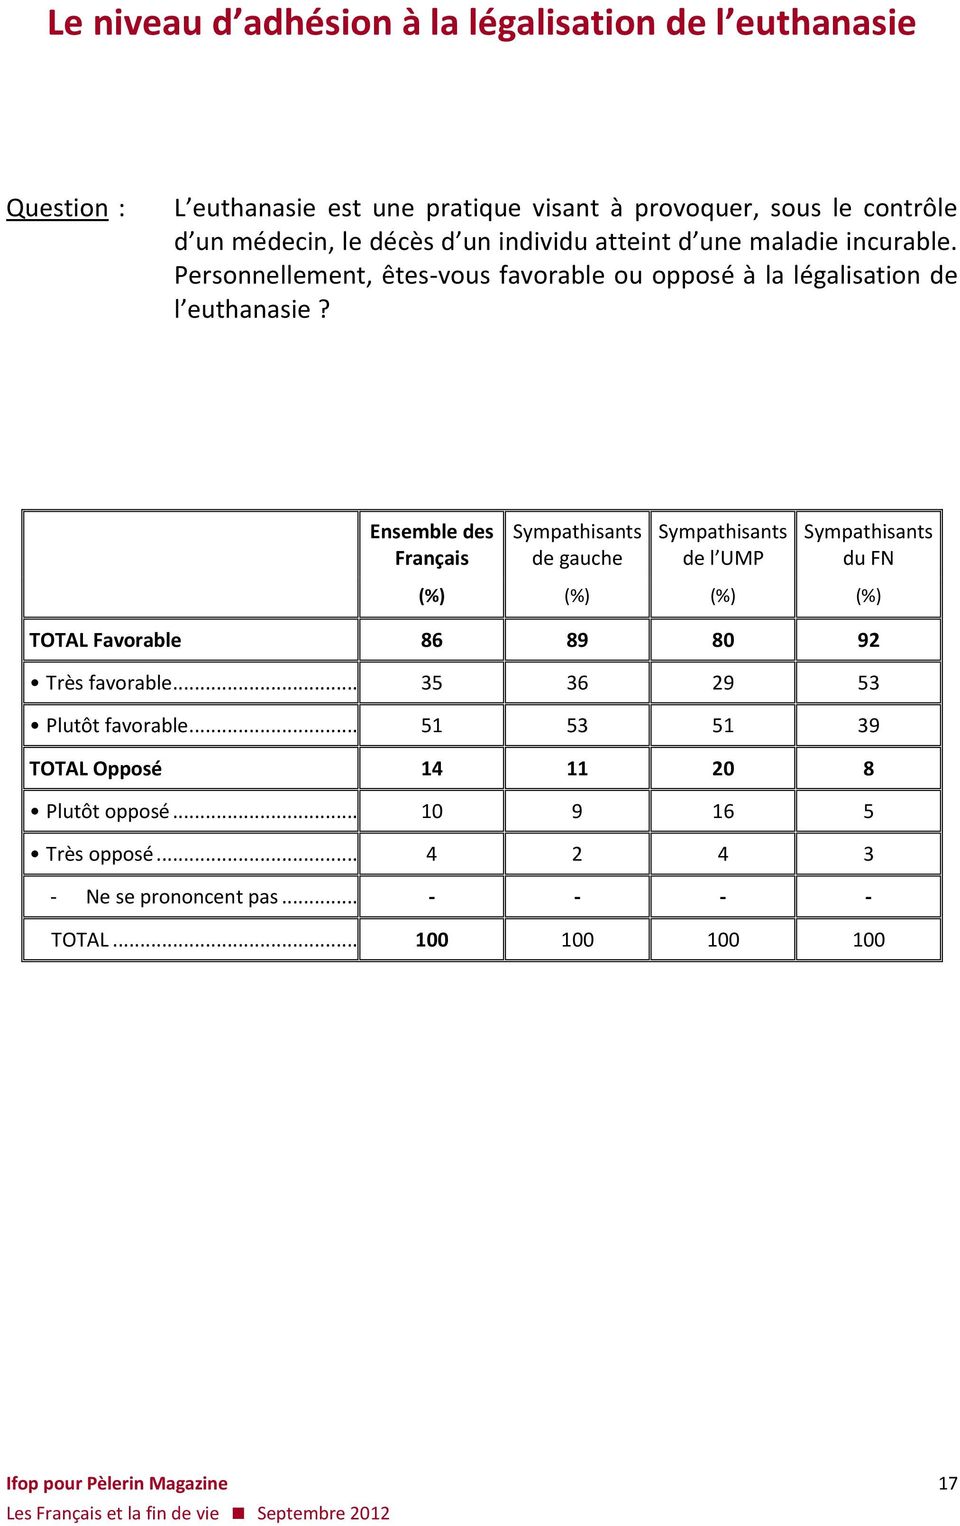 Ensemble des Français Sympathisants de gauche Sympathisants de l UMP Sympathisants du FN (%) (%) (%) (%) TOTAL Favorable 86 89 80 92 Très favorable.